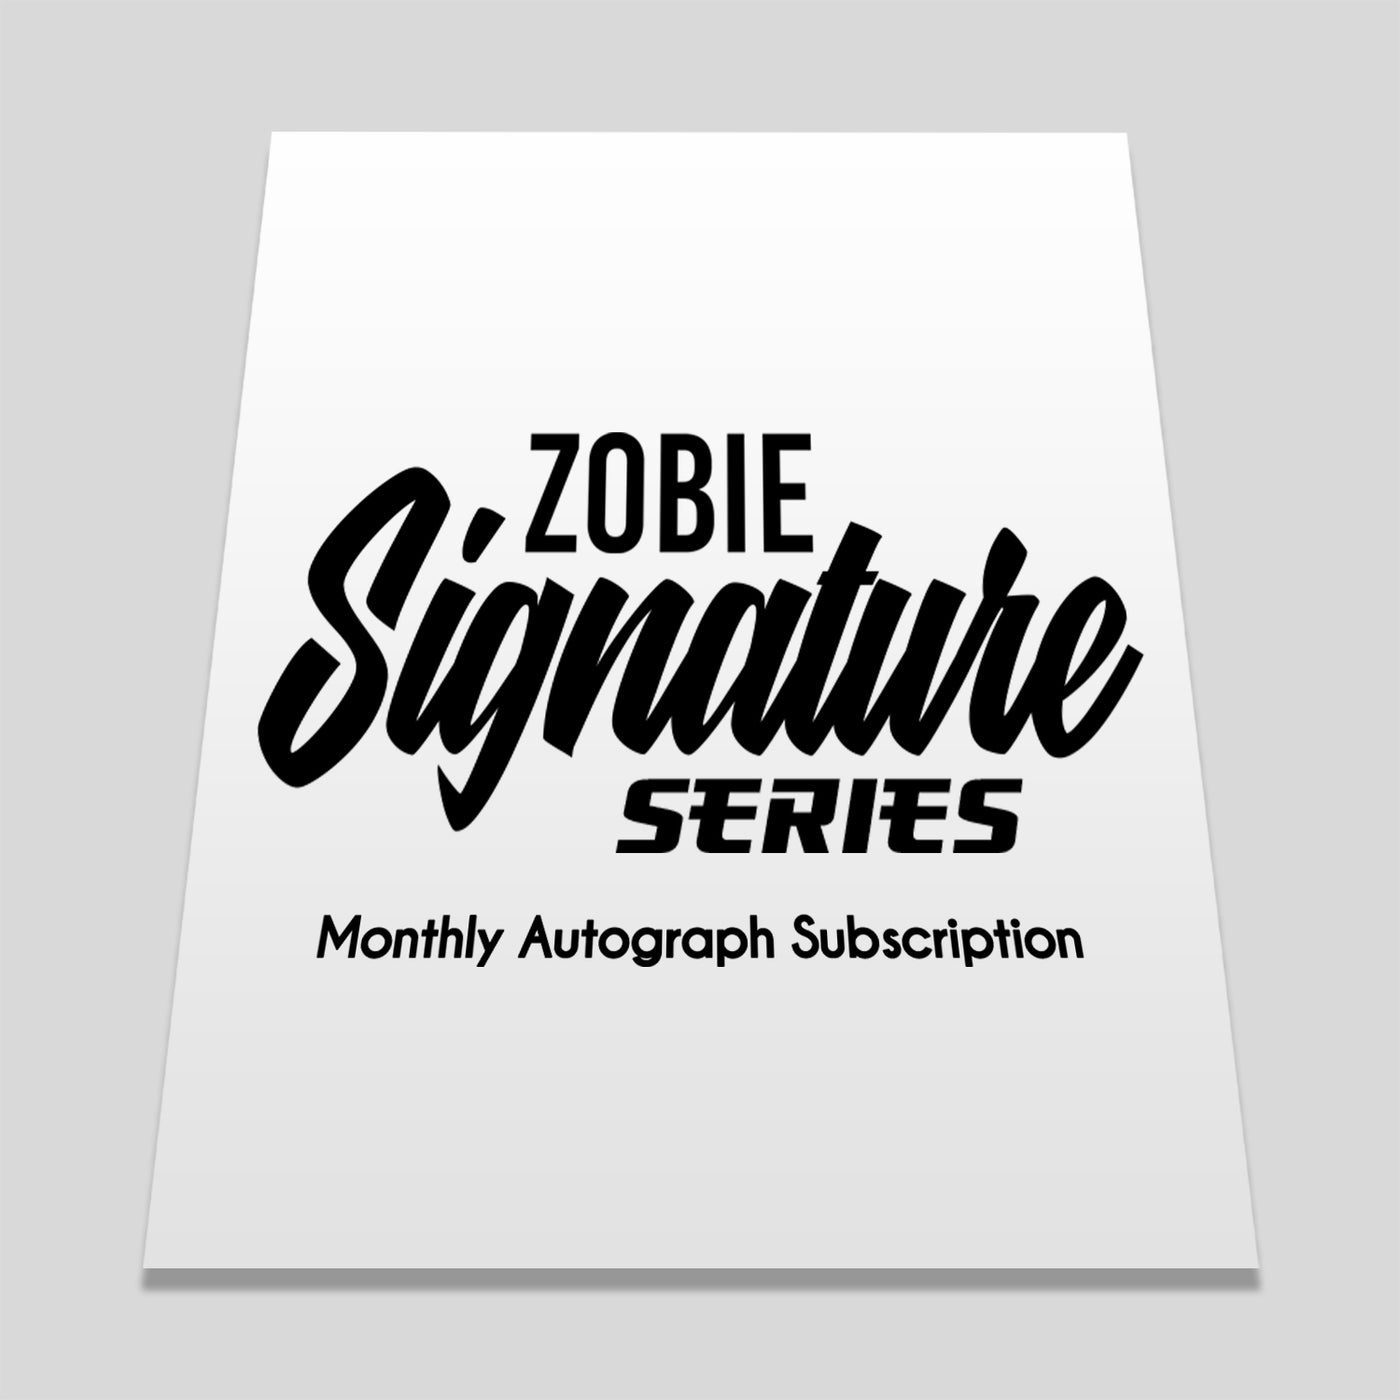 Zobie Signature Series - Monthly Autograph Subscription